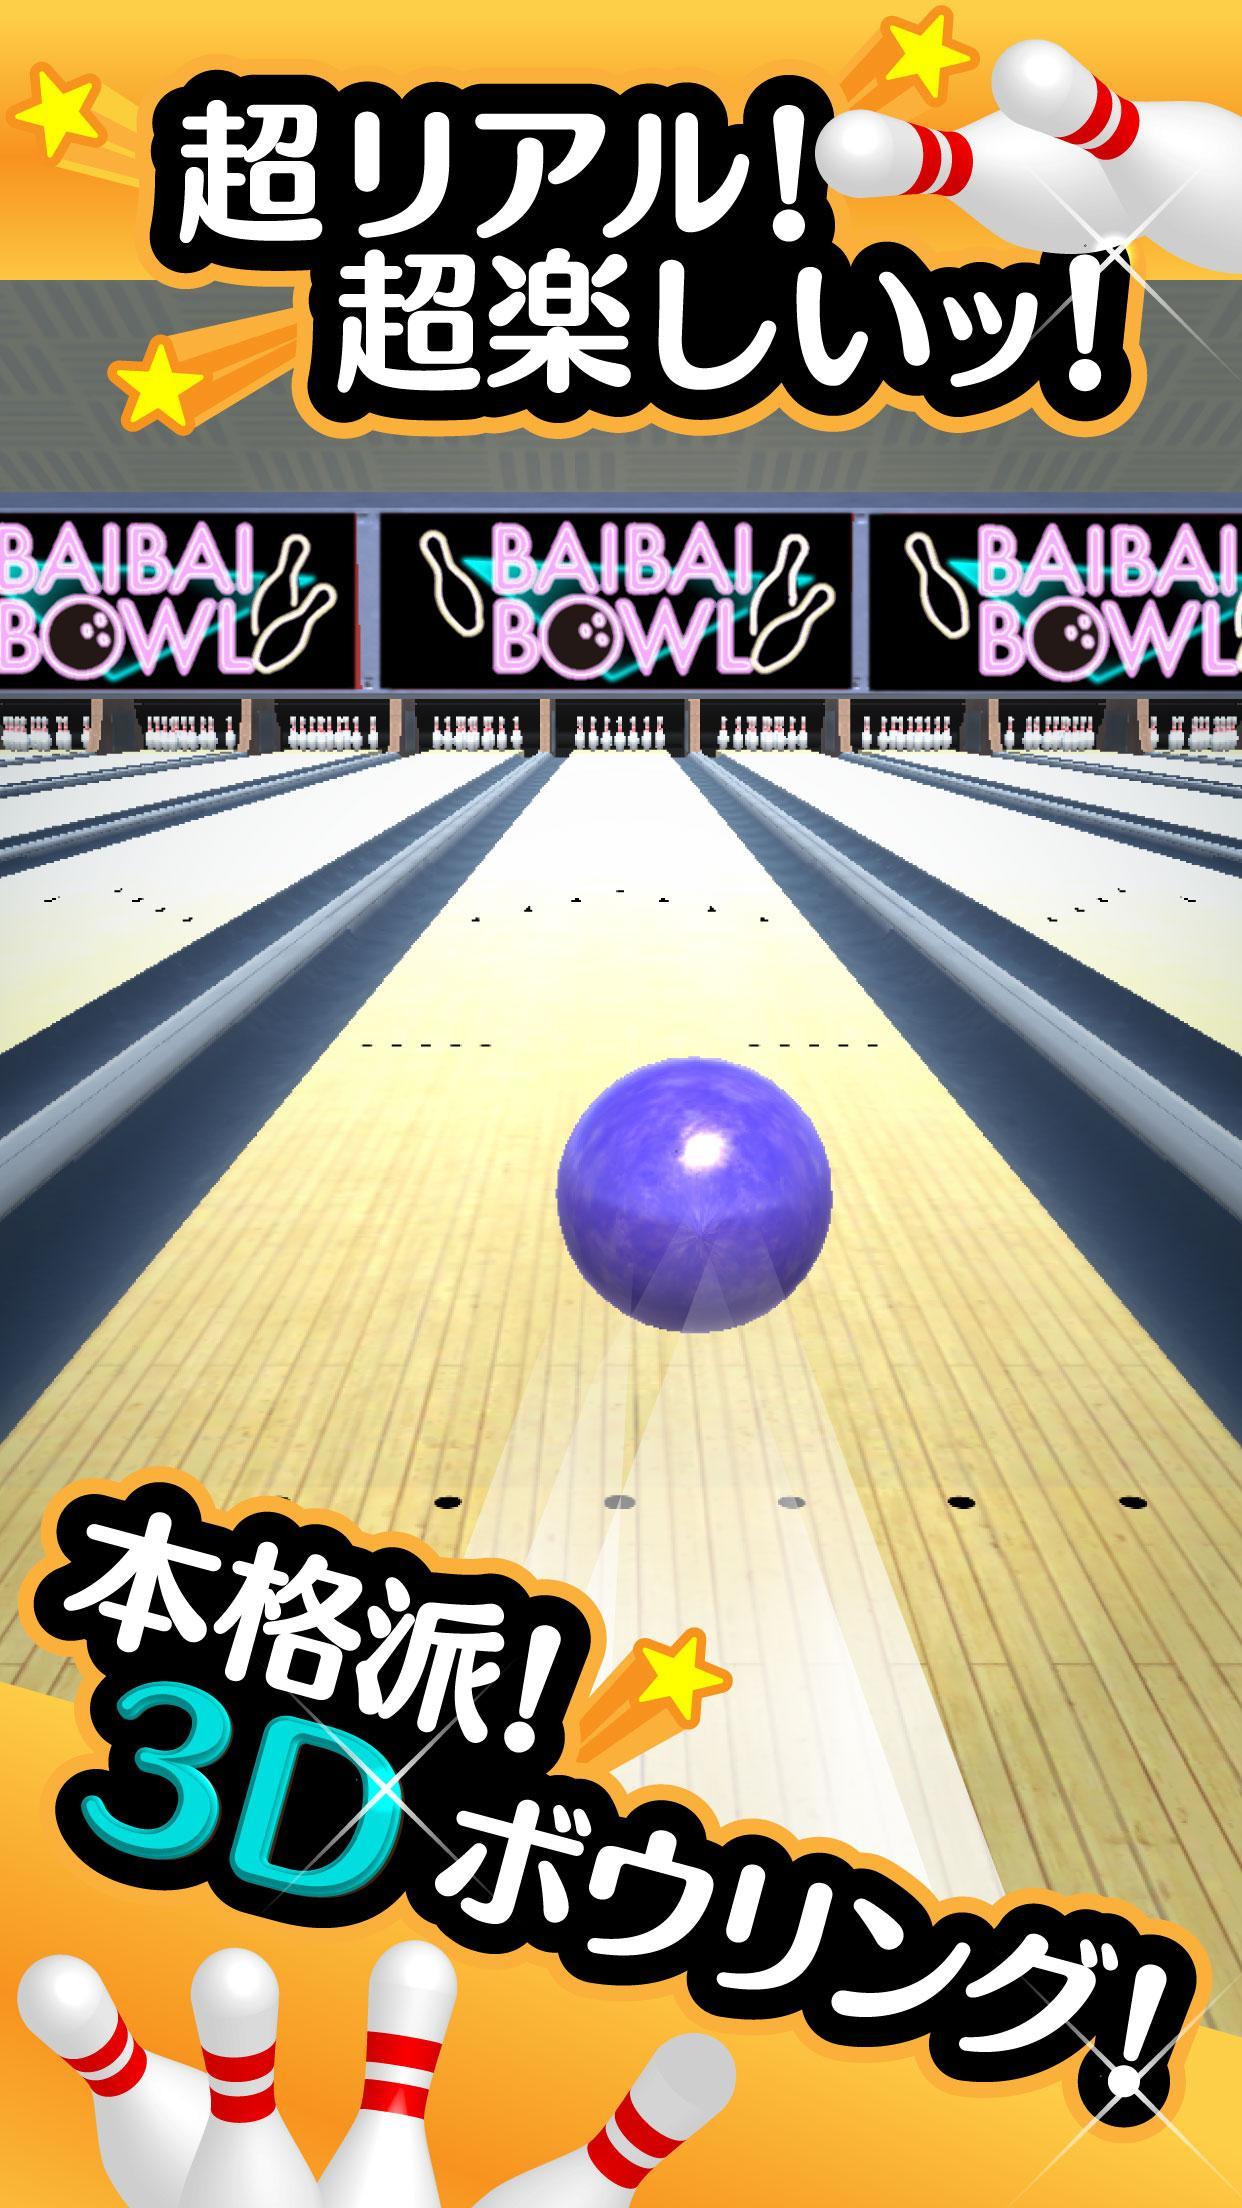 Screenshot 1 of Ordinary Bowling - Бесплатная игра в боулинг! 1.0.4